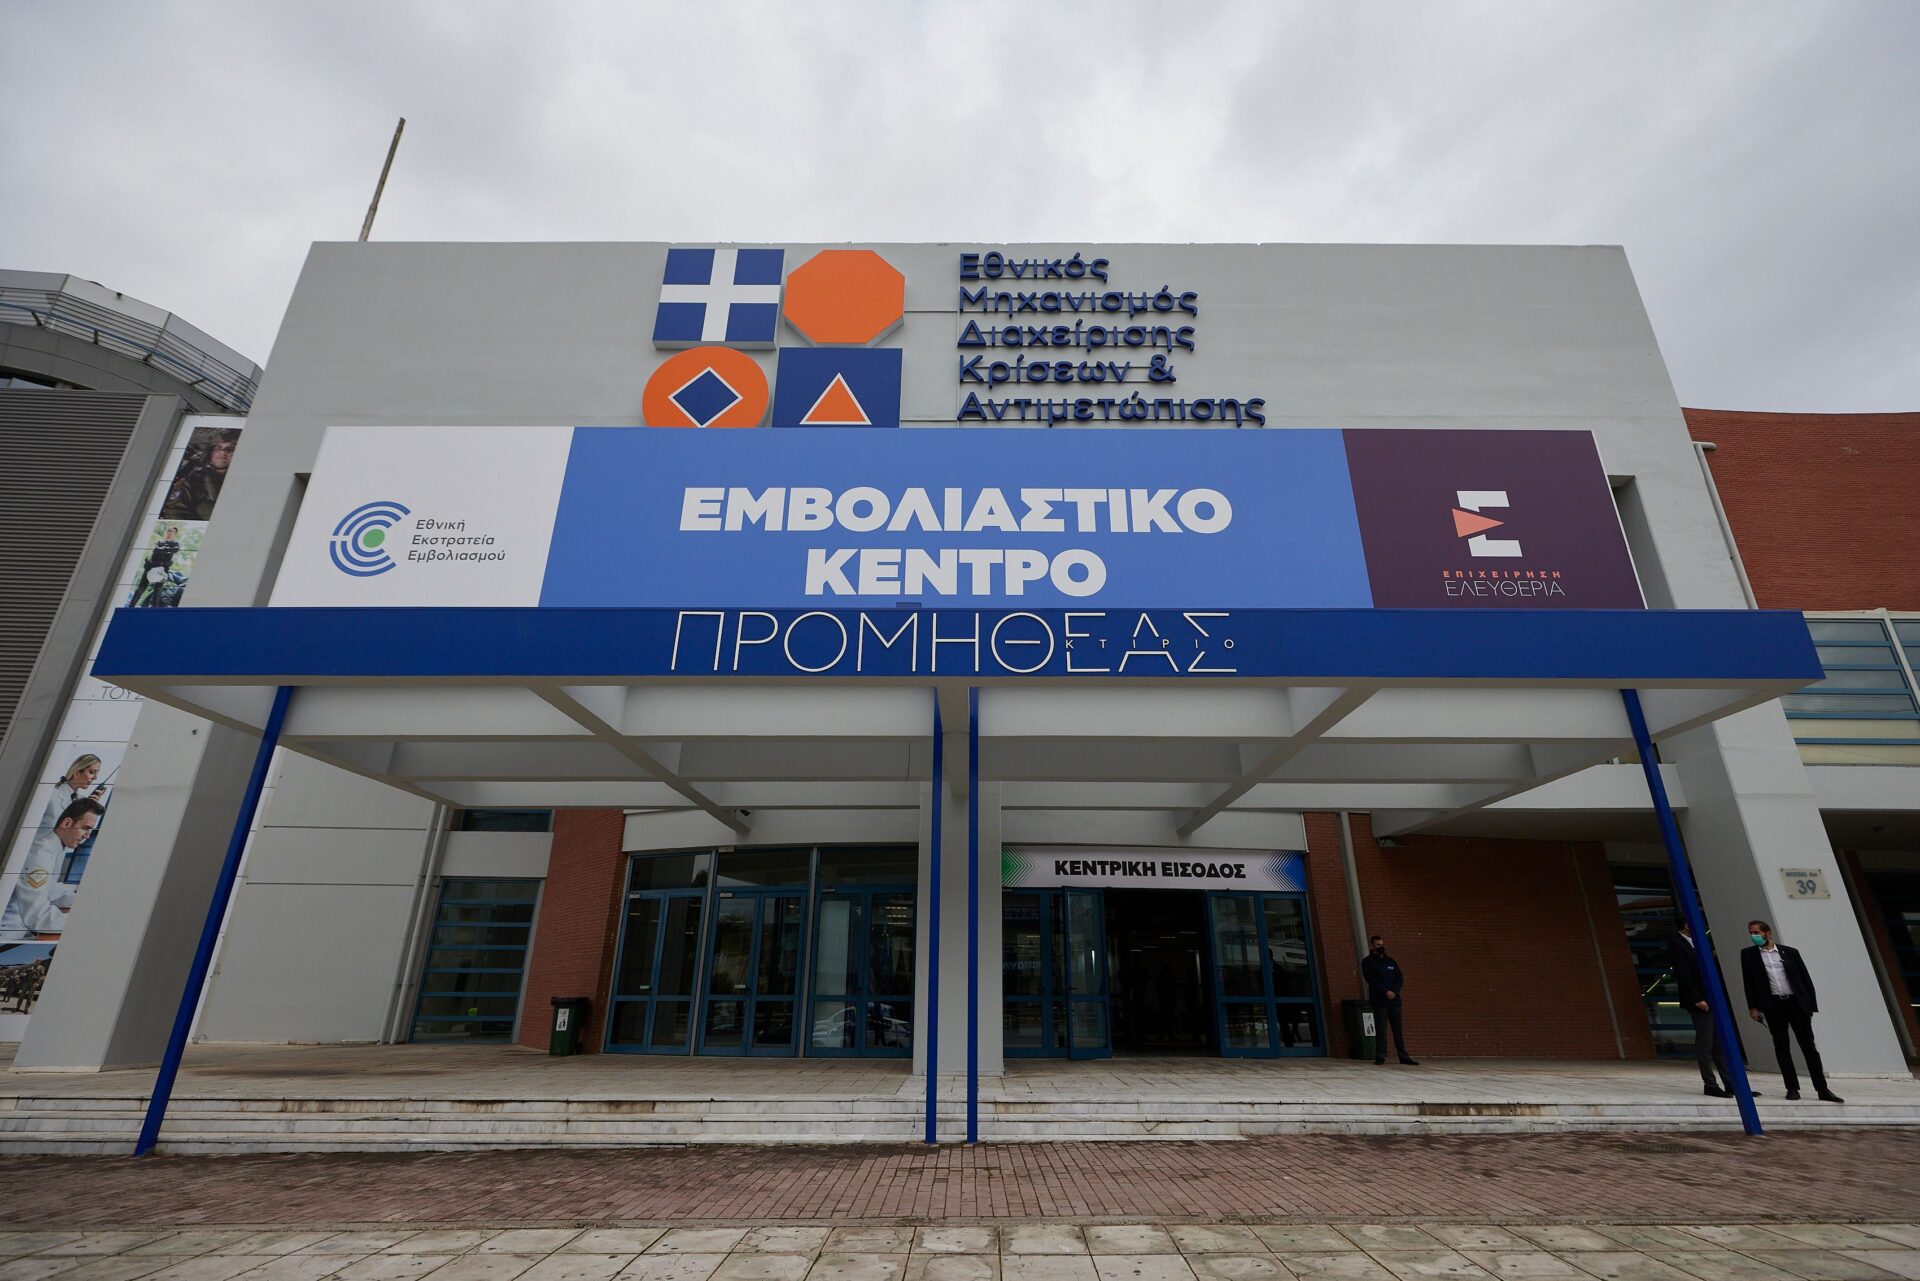 Ξεκίνησαν τη λειτουργία τους τη Δευτέρα 15 Φεβρουαρίου 2021 τα εμβολιαστικά κέντρα στην Αθήνα - Mega Εμβολιαστικό Κέντρο (Ηelexpo) στο Μαρούσι και στη ΔΕΘ στη Θεσσαλονίκη.